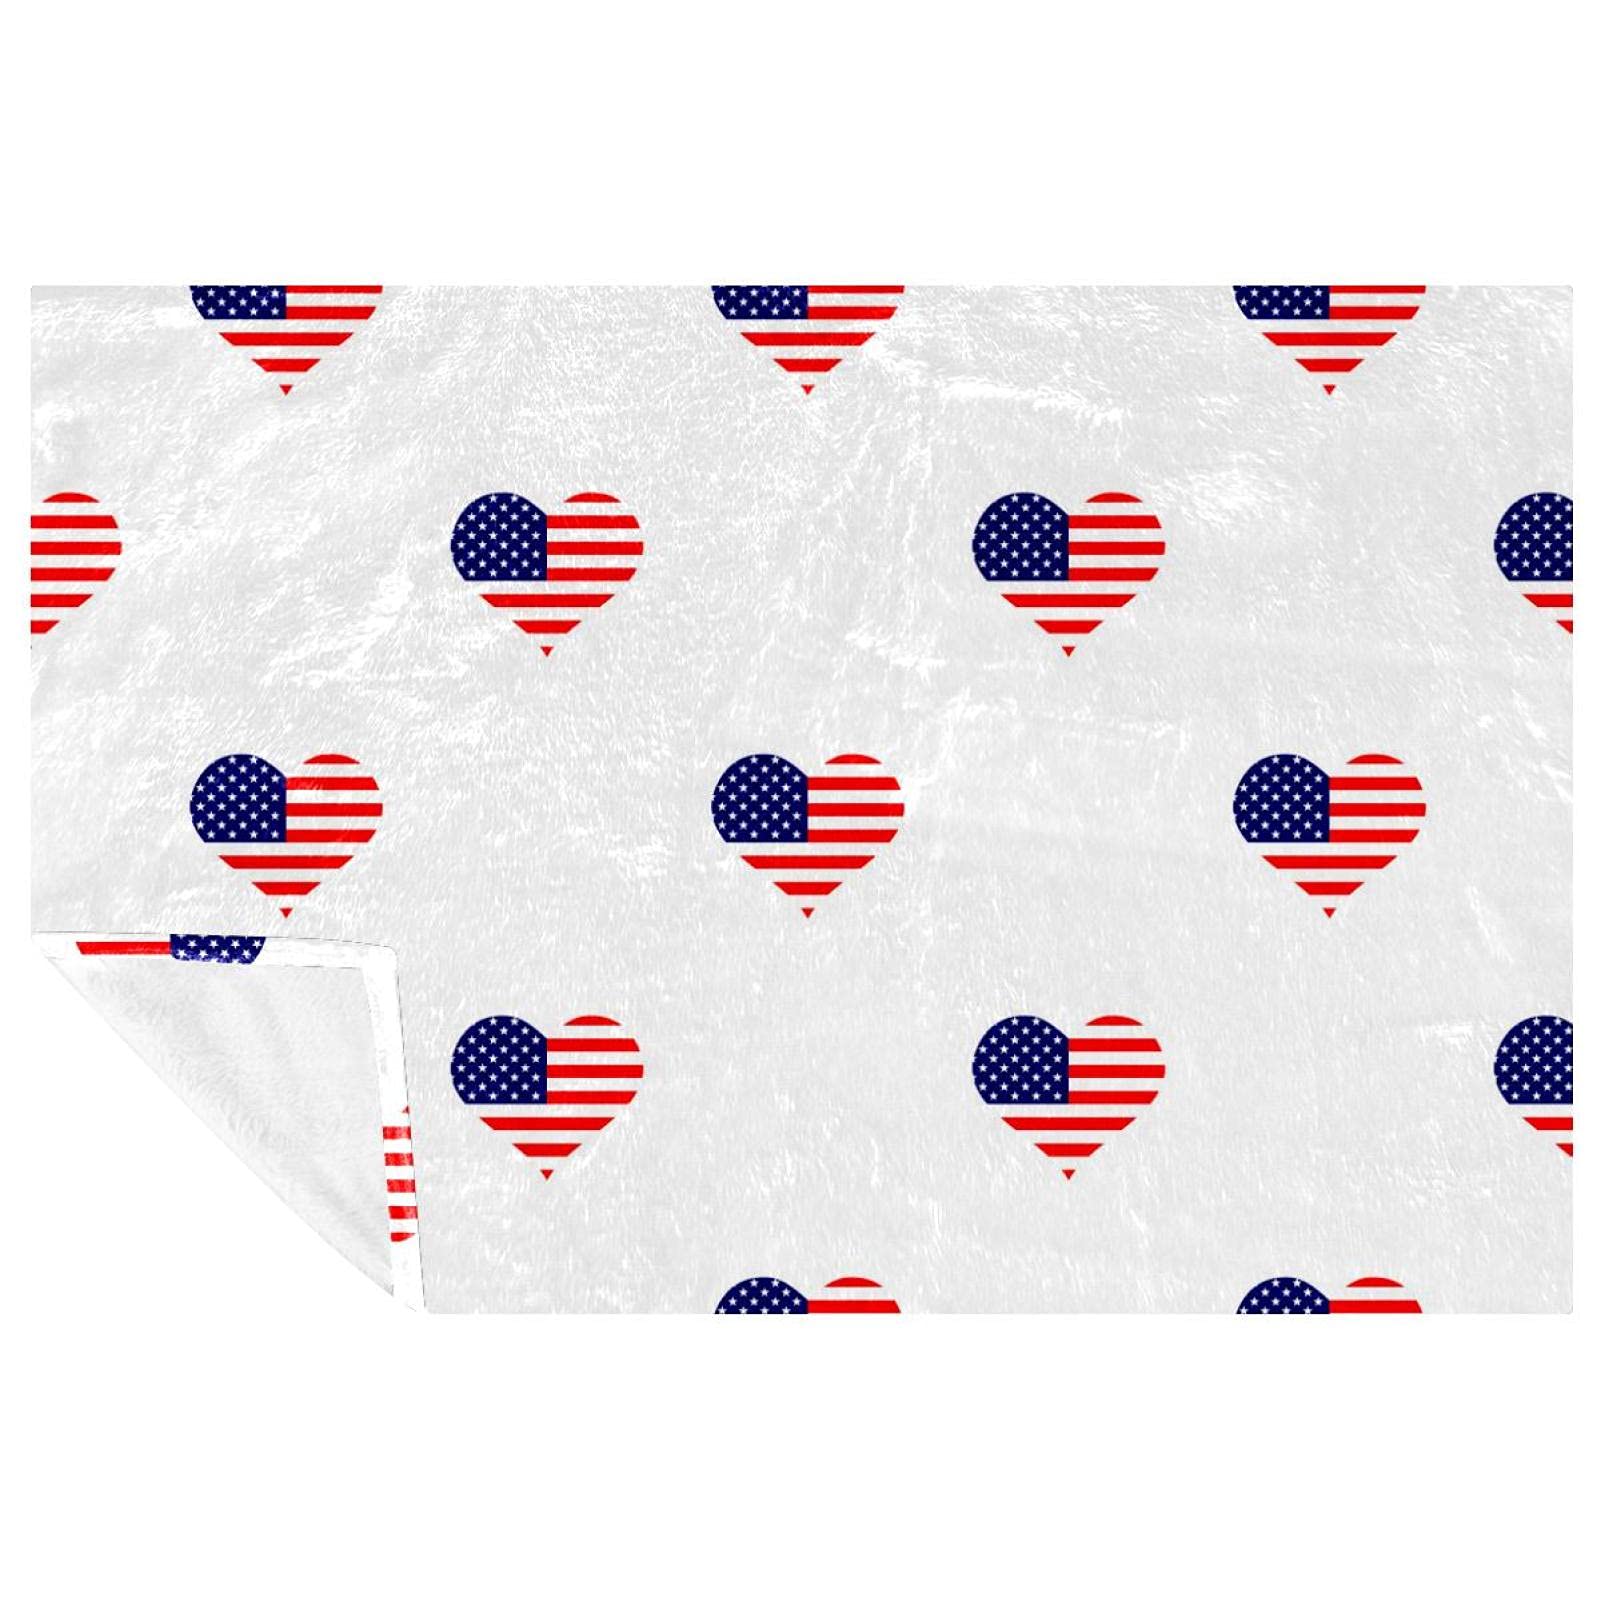 BestIdeas Decke, Motiv: Liebesherz, USA-Flagge, weich, warm, gemütlich, Überwurf für Bett, Couch, Sofa, Picknick, Camping, Strand, 150 x 200 cm